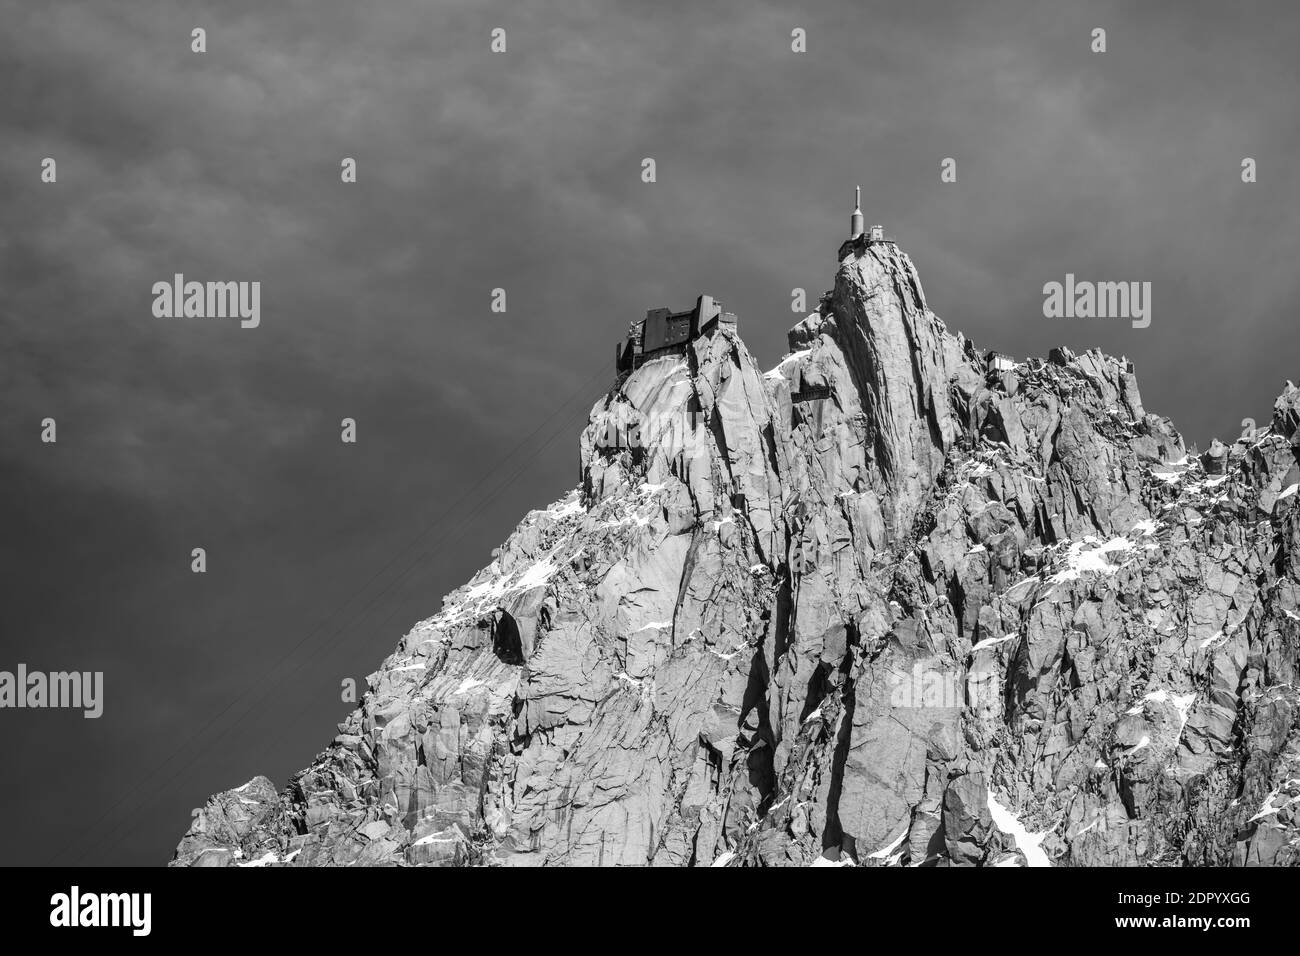 Noir et blanc, sommet de montagne dans les nuages, station de montagne du téléphérique, aiguille du midi, Chamonix, haute-Savoie, France Banque D'Images